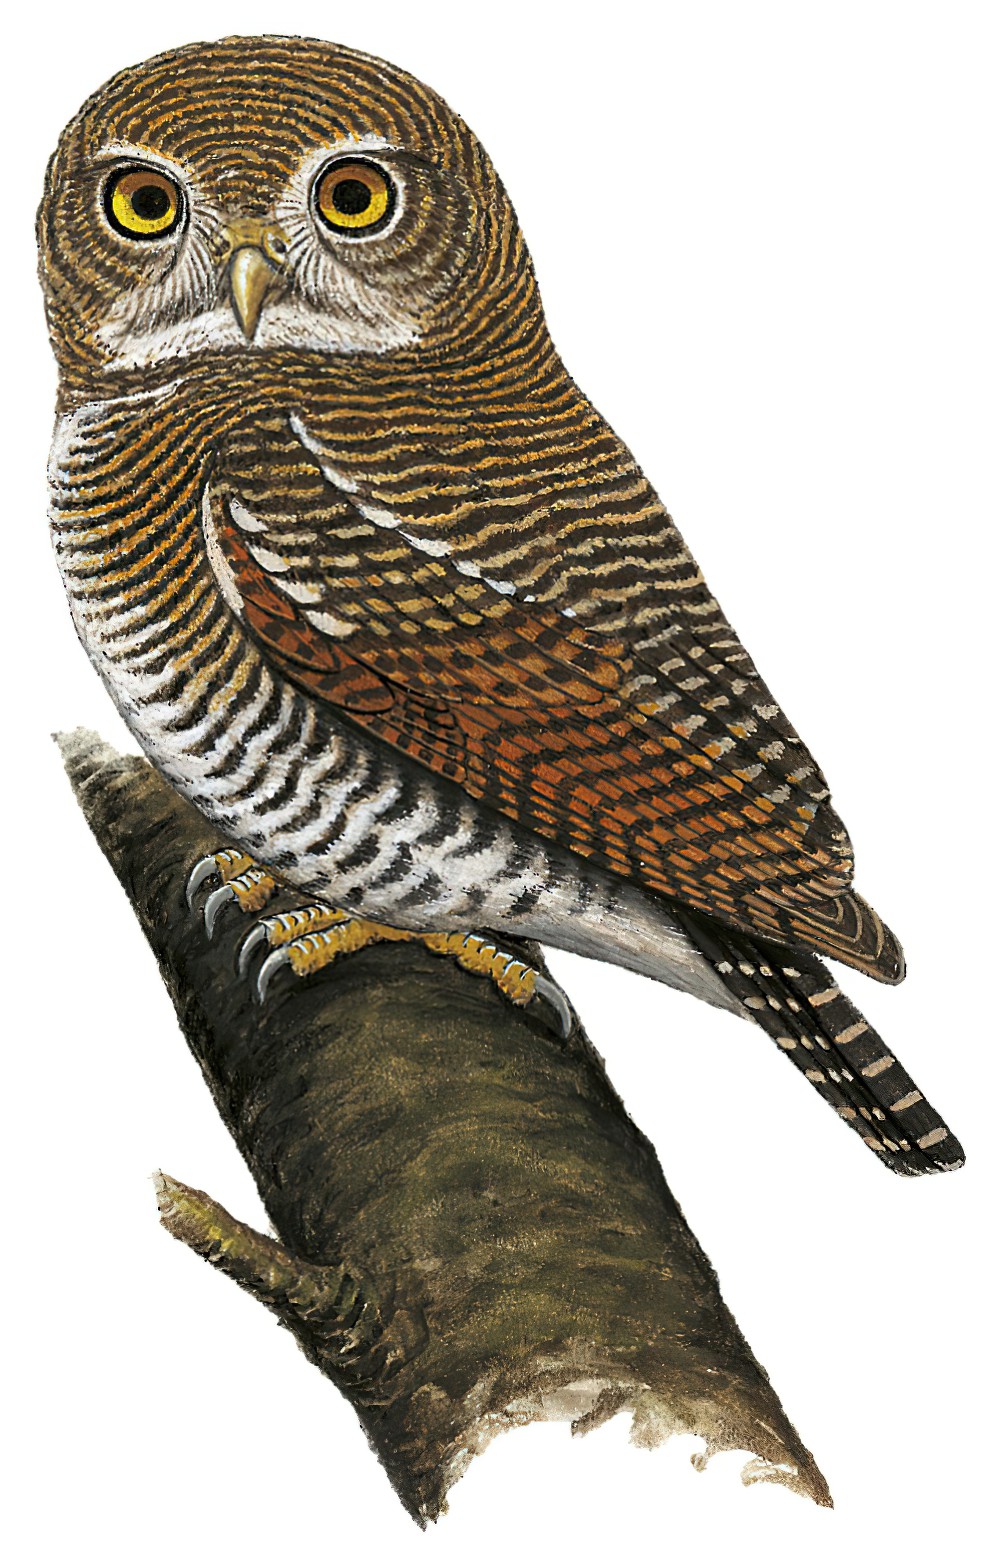 Jungle Owlet / Glaucidium radiatum